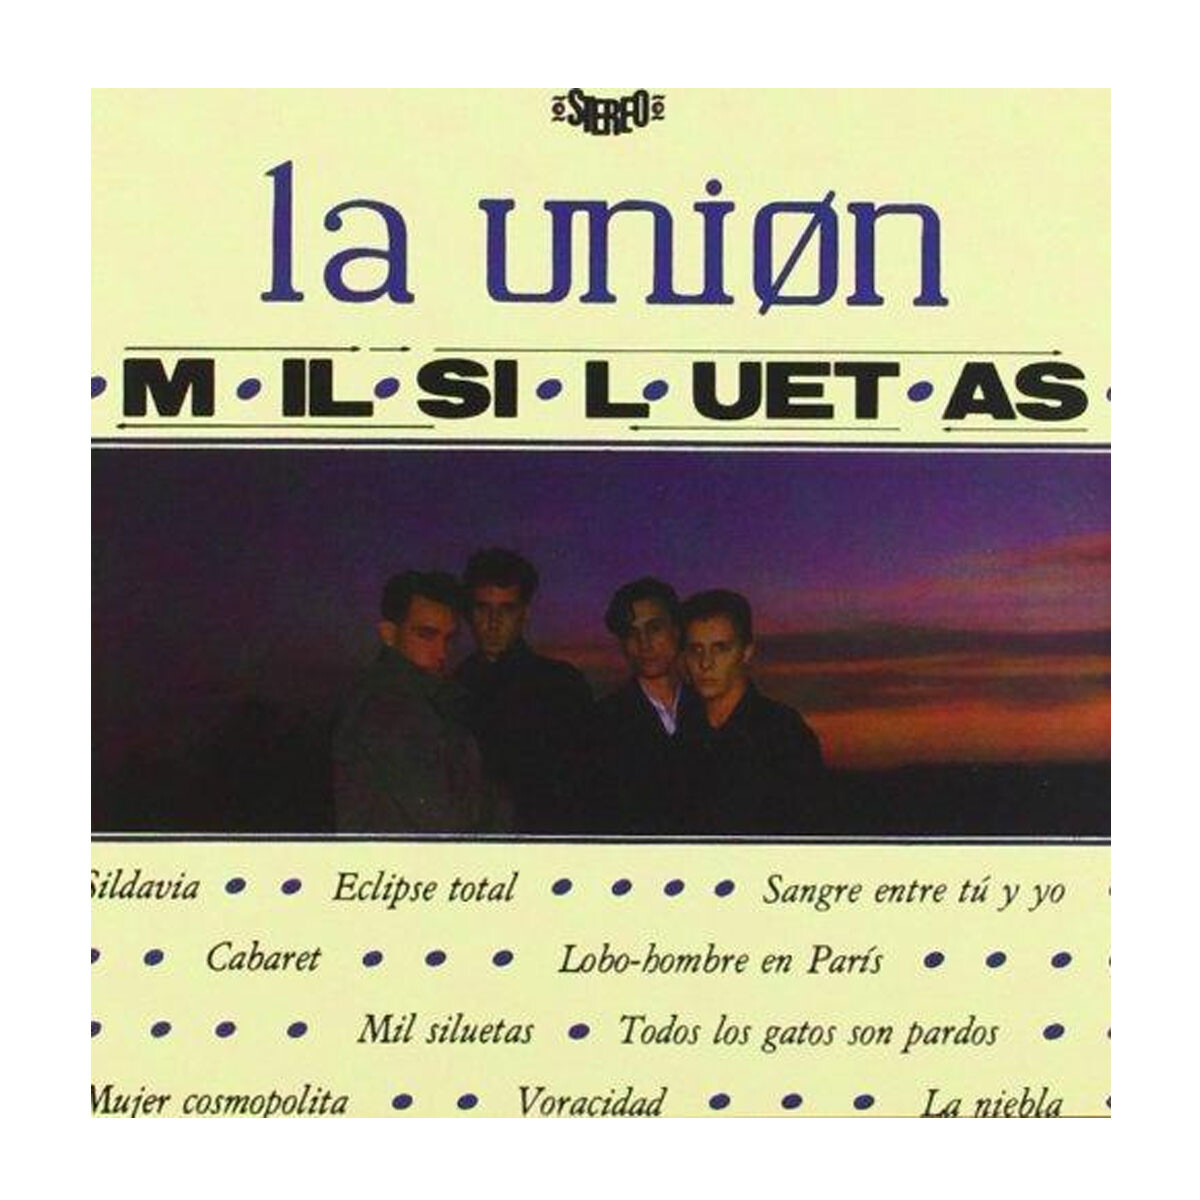 La Union / Mil Siluetas - Lp 